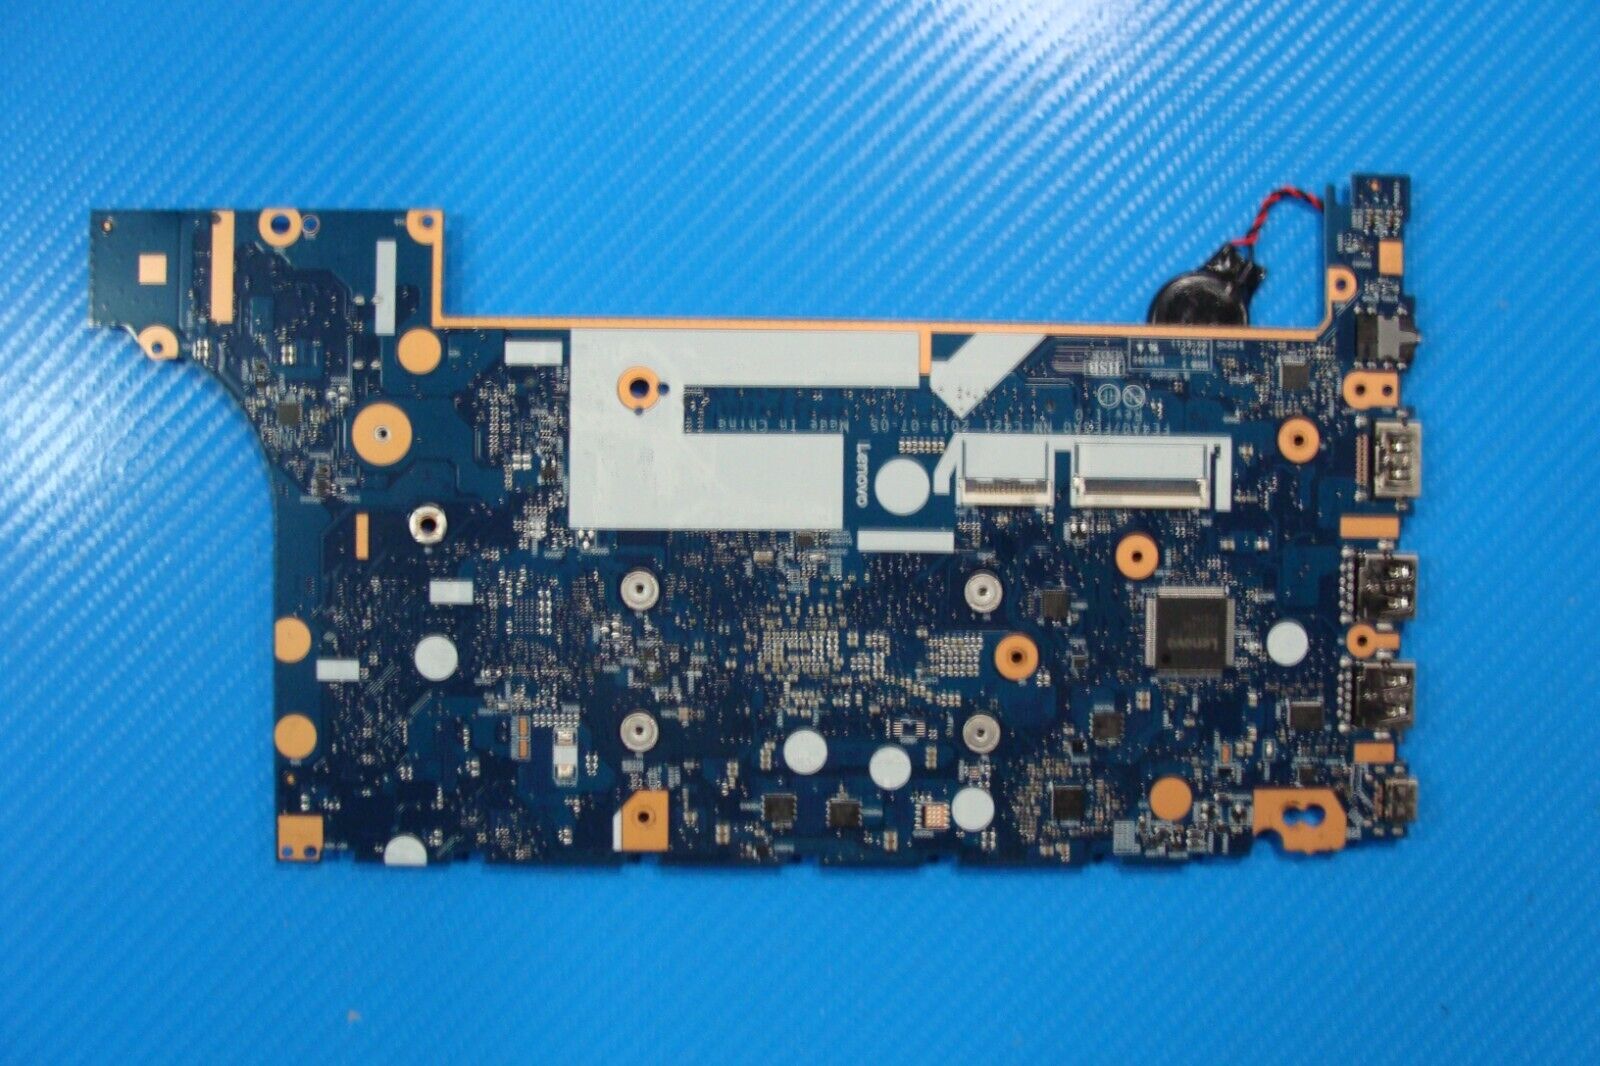 Lenovo ThinkPad E15 15.6